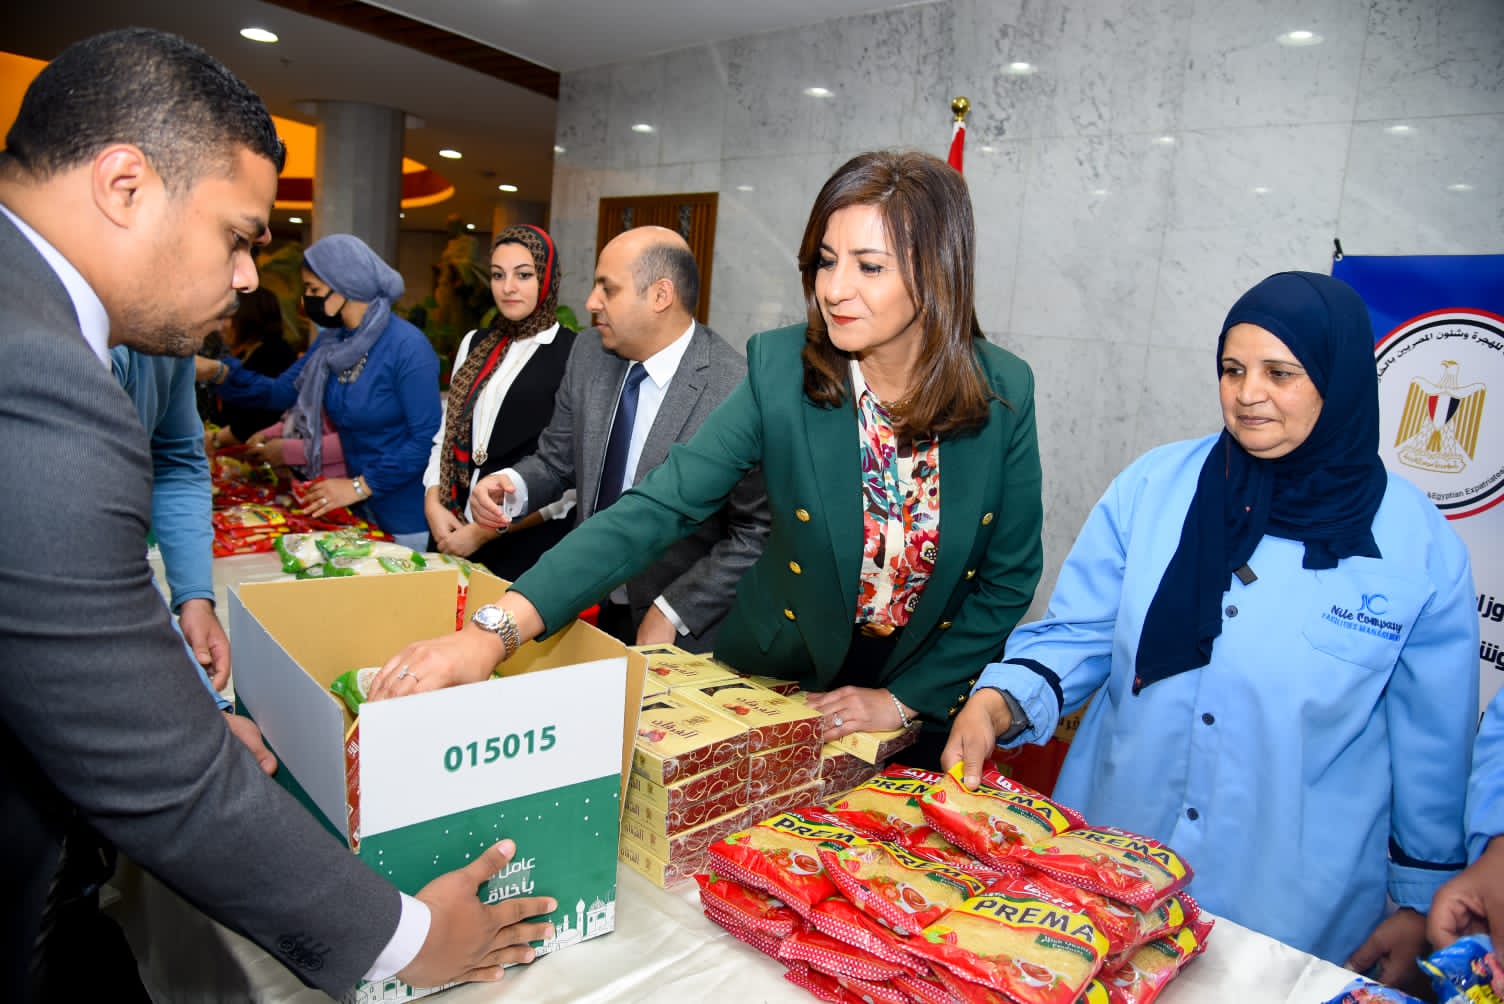 السفيرة نبيلة مكرم: مشاركة وزارة الهجرة بحملة إفطار صائم يتزامن مع إعلان السيد الرئيس ٢٠٢٢ عاما للمجتمع المدني